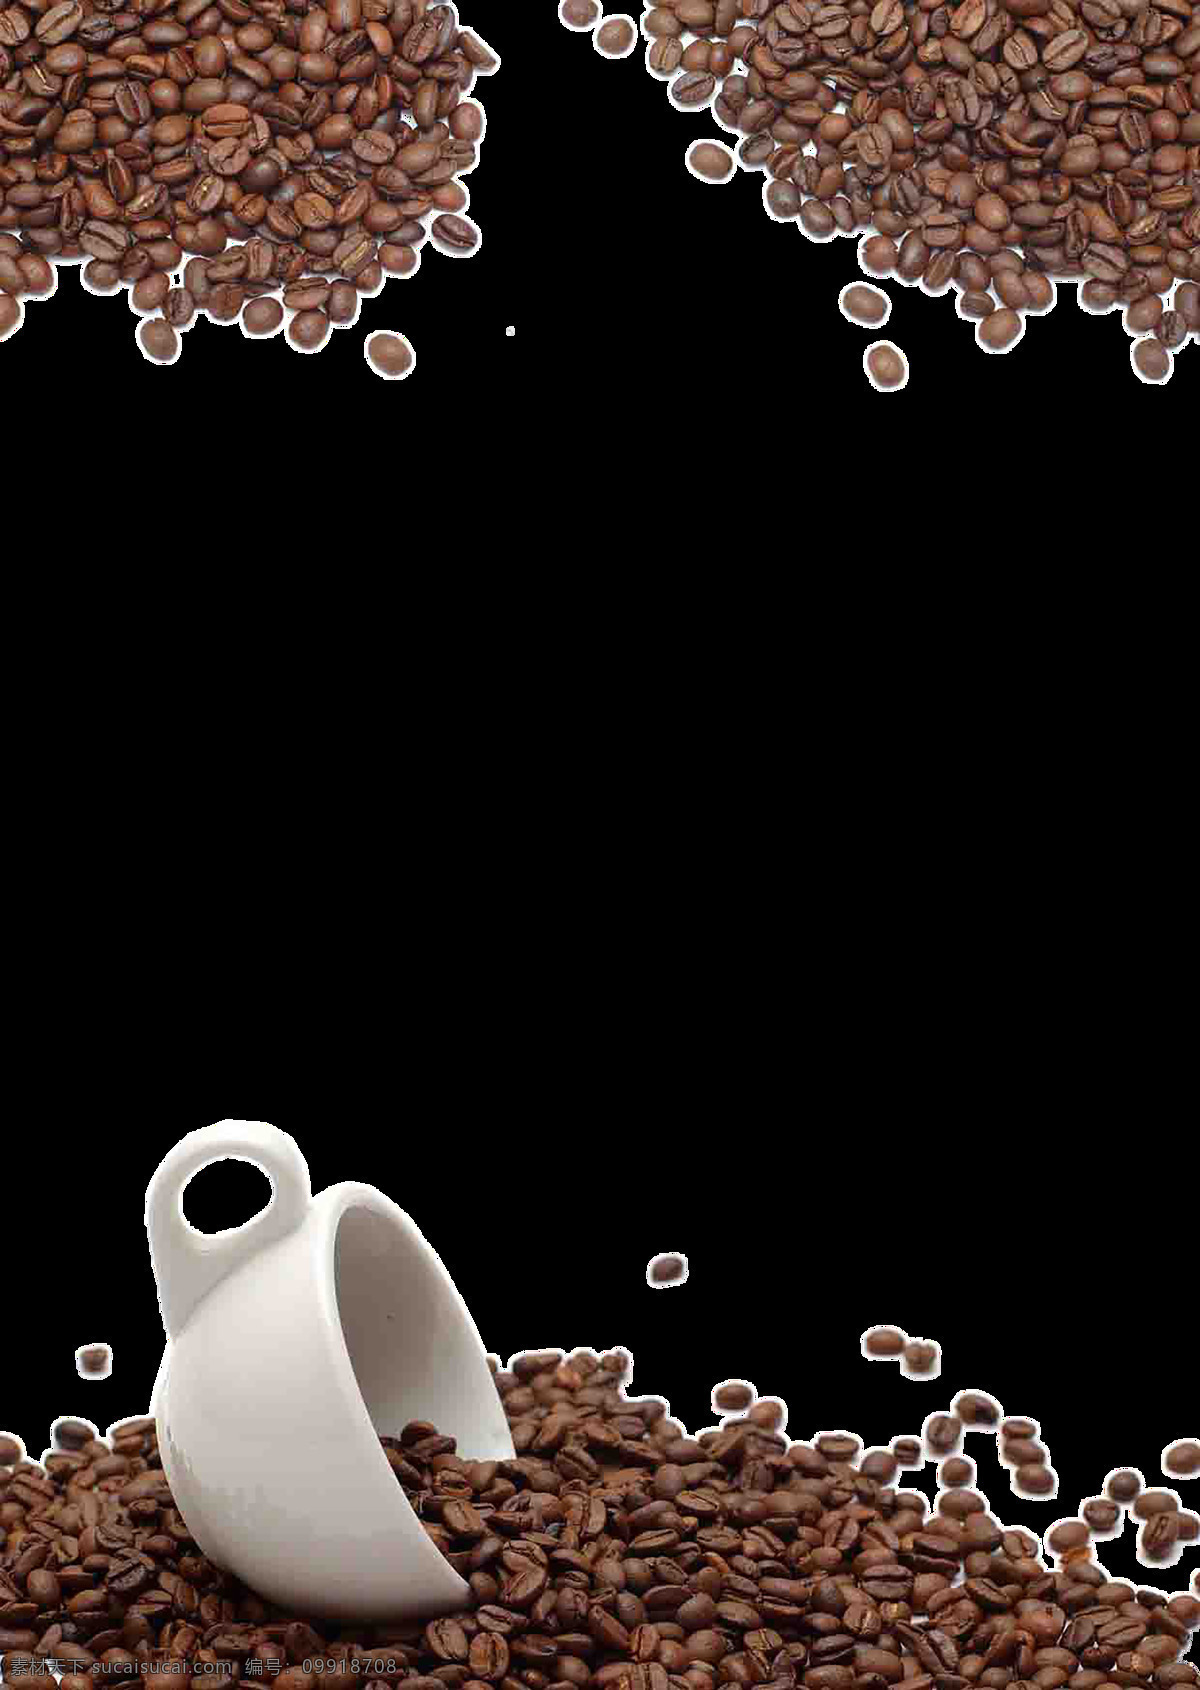 咖啡图片 咖啡 咖啡字体 心形咖啡 爱心咖啡 卡普奇诺 矢量咖啡 手绘咖啡 咖啡插画 卡通咖啡 咖啡奶茶 创意咖啡 咖啡拉花 咖啡英文 飘带 咖啡杯 甜品 美味咖啡 饮品 背景系列 展板模板